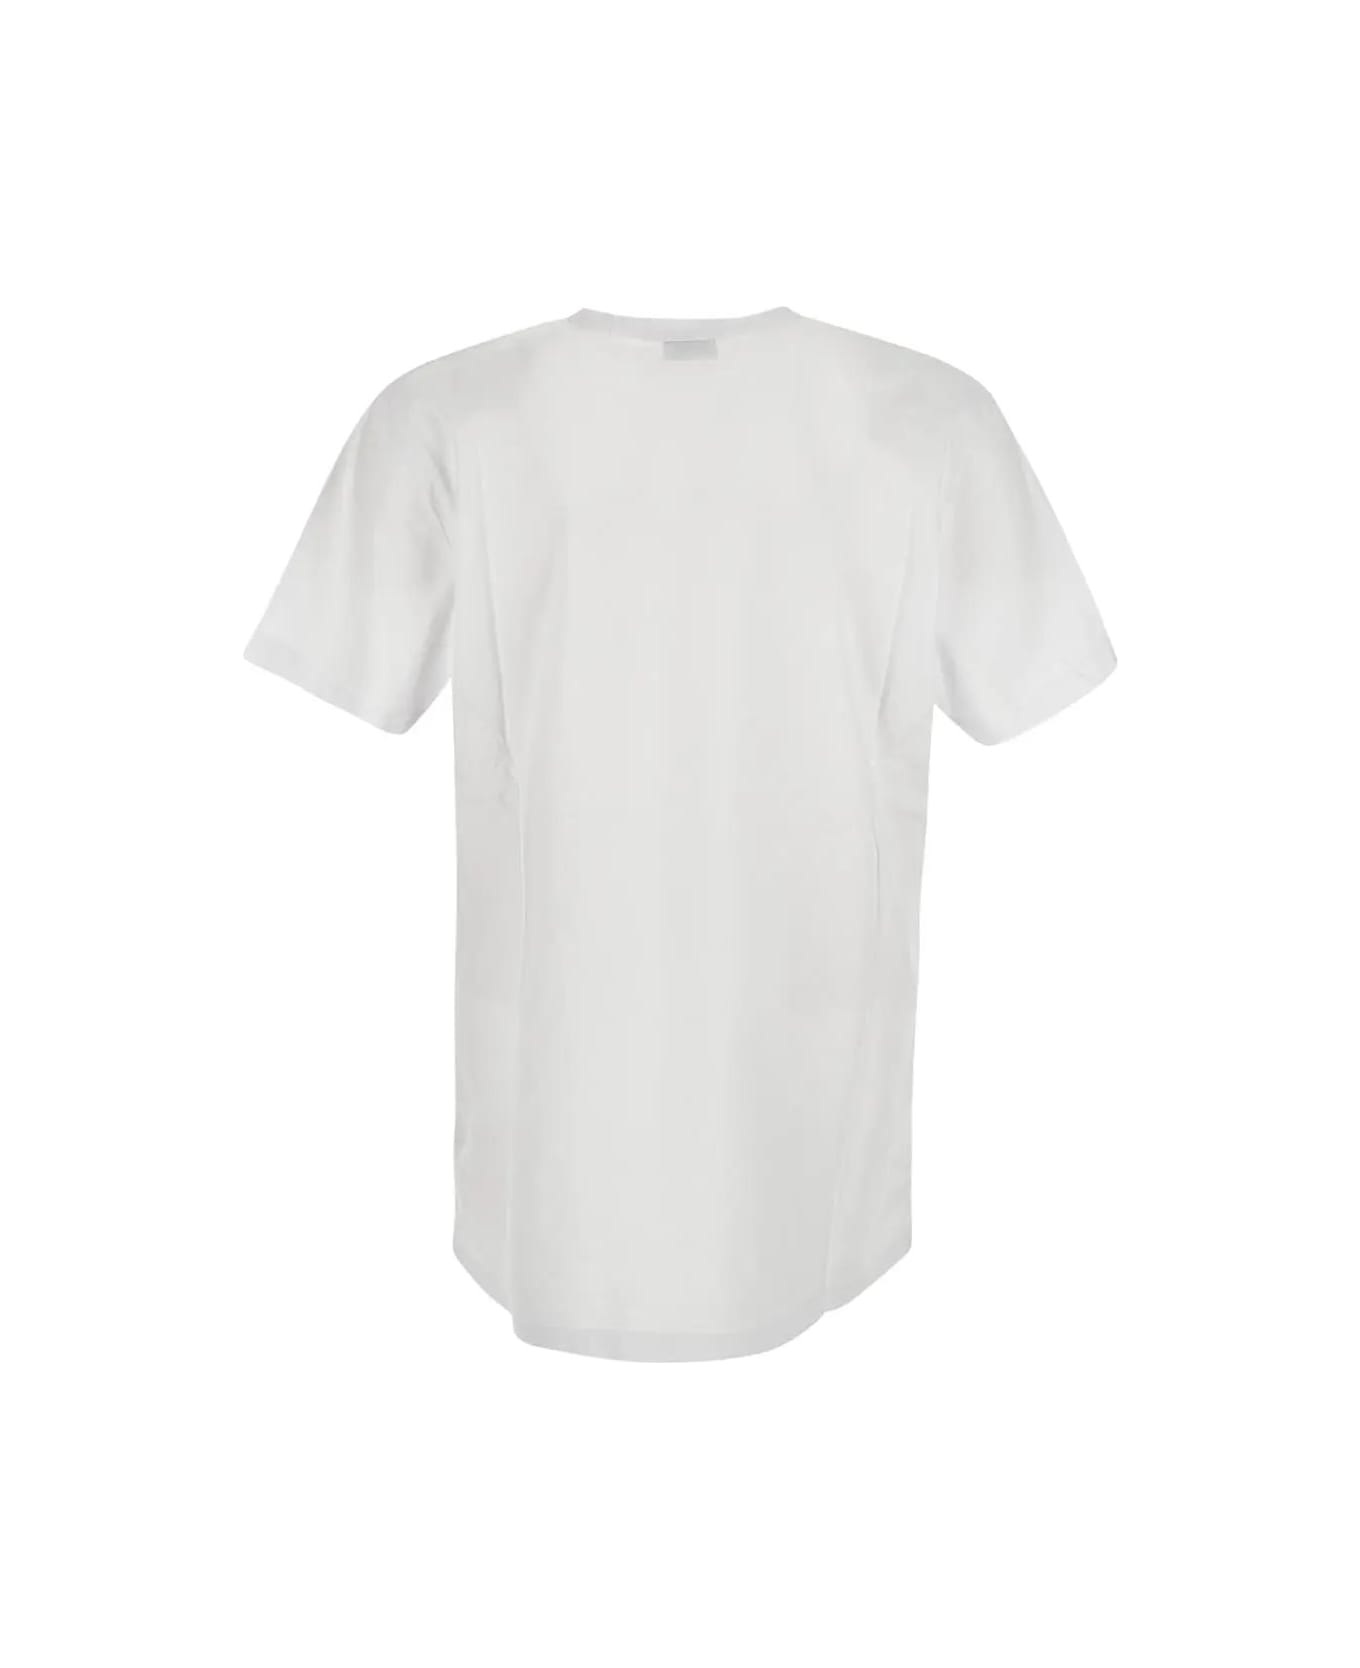 Woolrich Sheep T-shirt - White